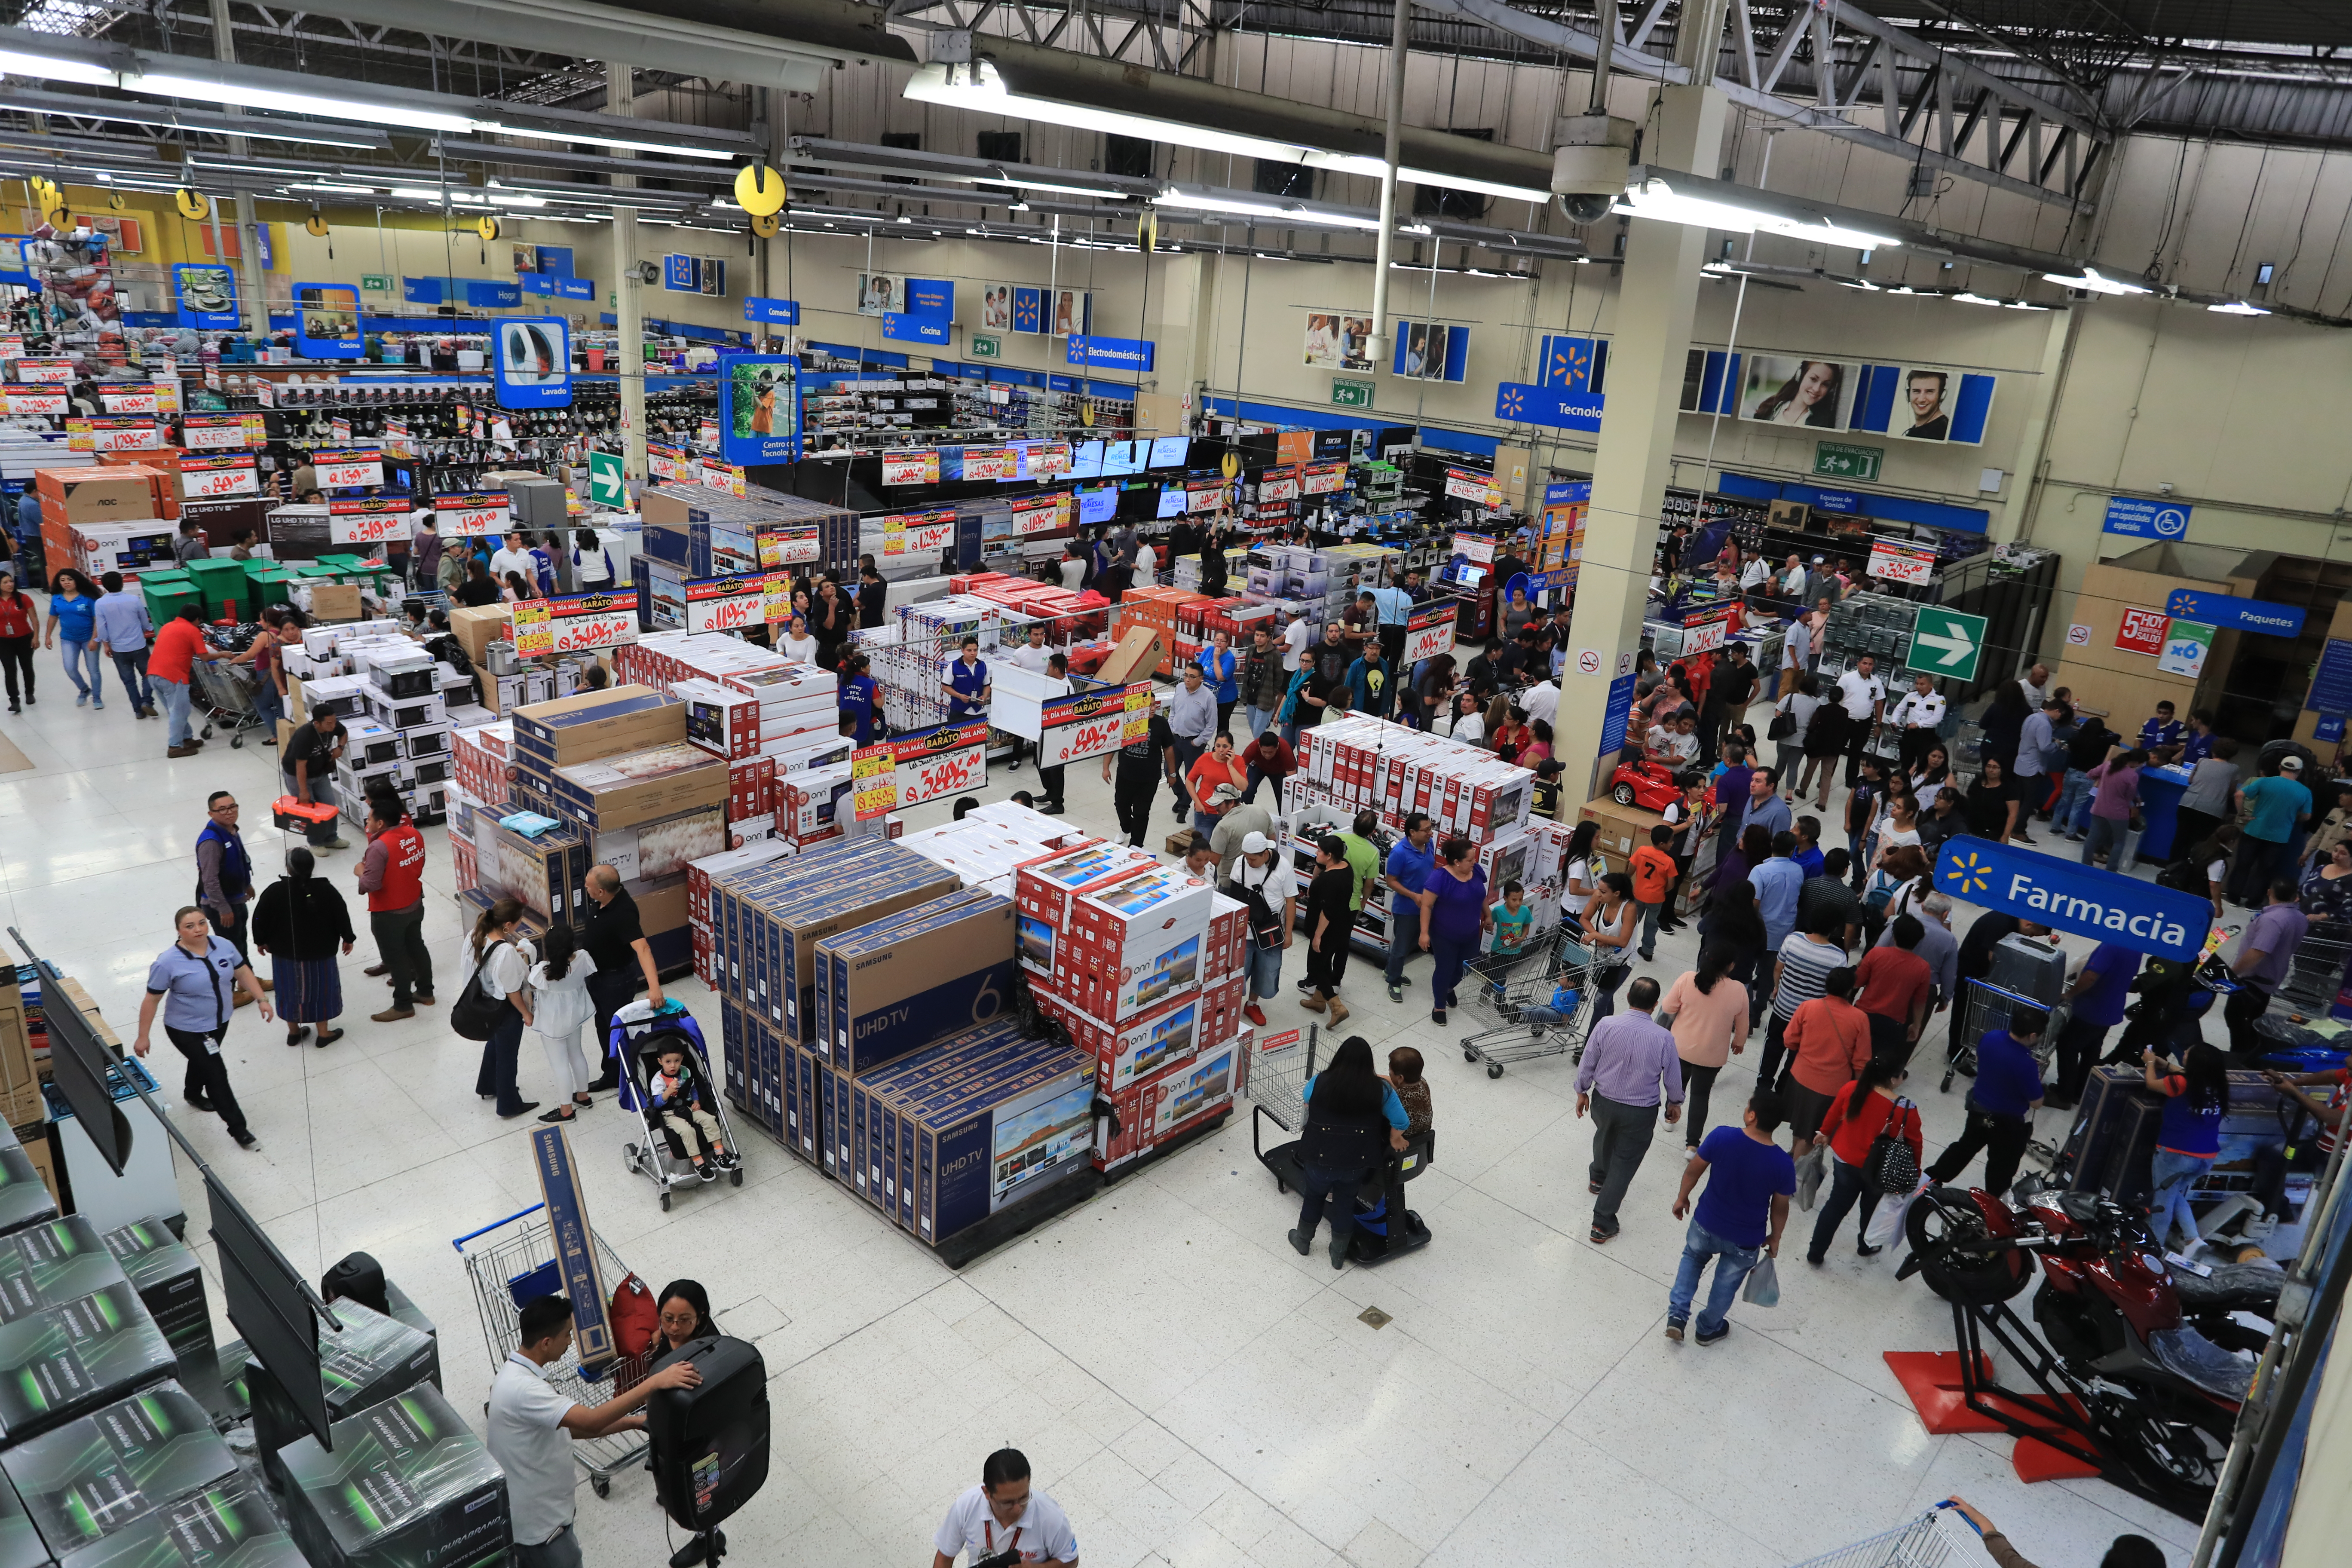 La demanda interna crecerá por el mayor flujo de remesas, según las autoridades. (Foto Prensa Libre: Hemeroteca)